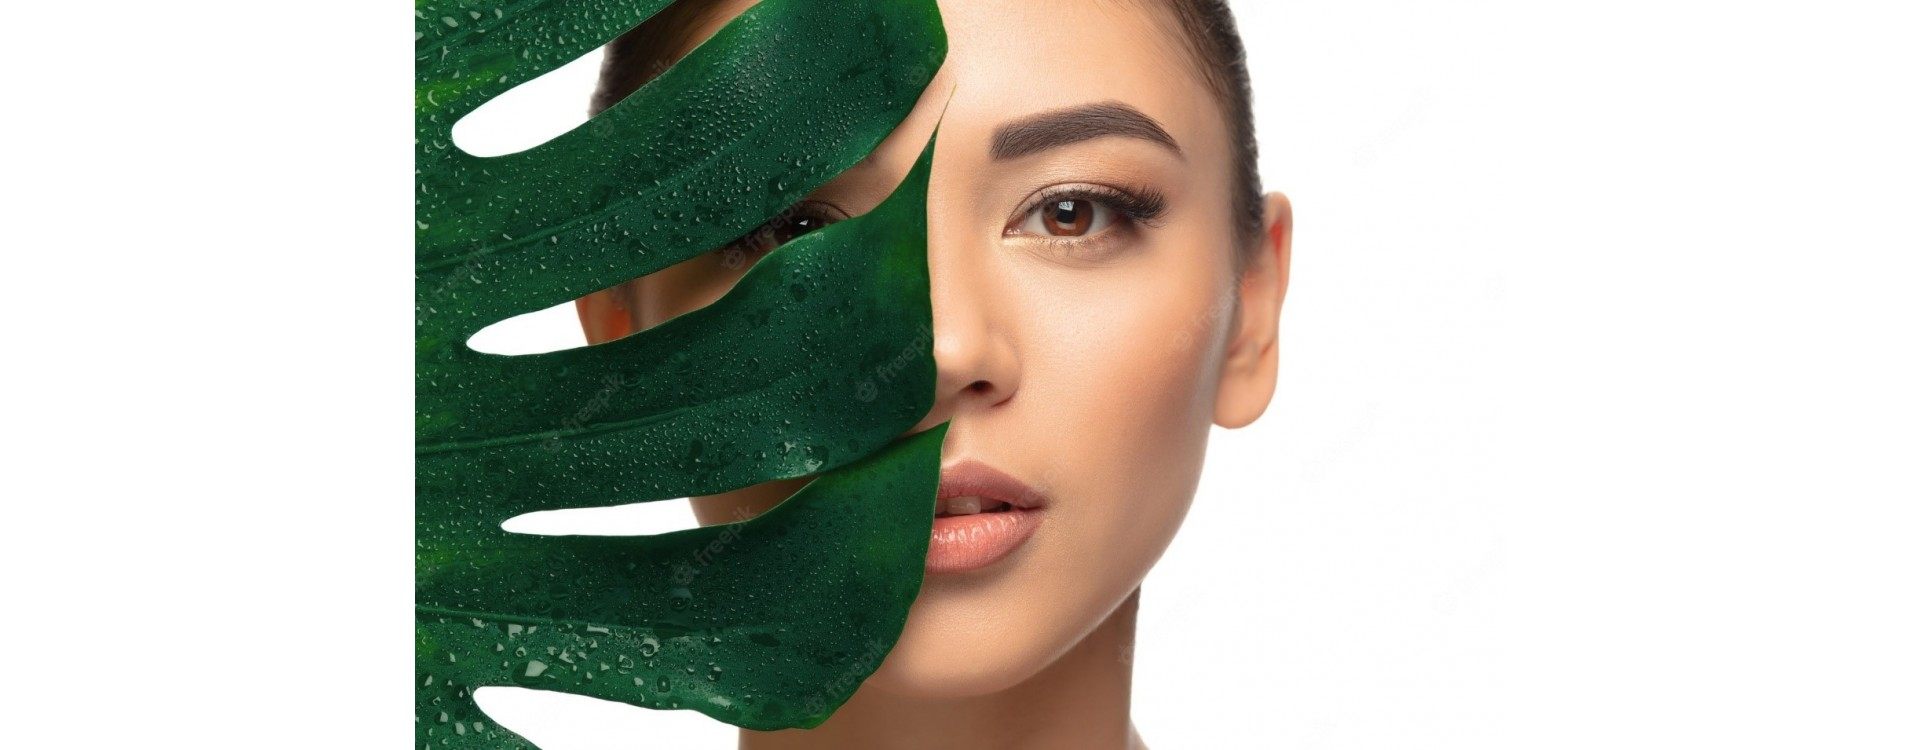 Strahlende Haut mit Bio-Produkten: Leitfaden zu den Vorteilen natürlicher Schönheit